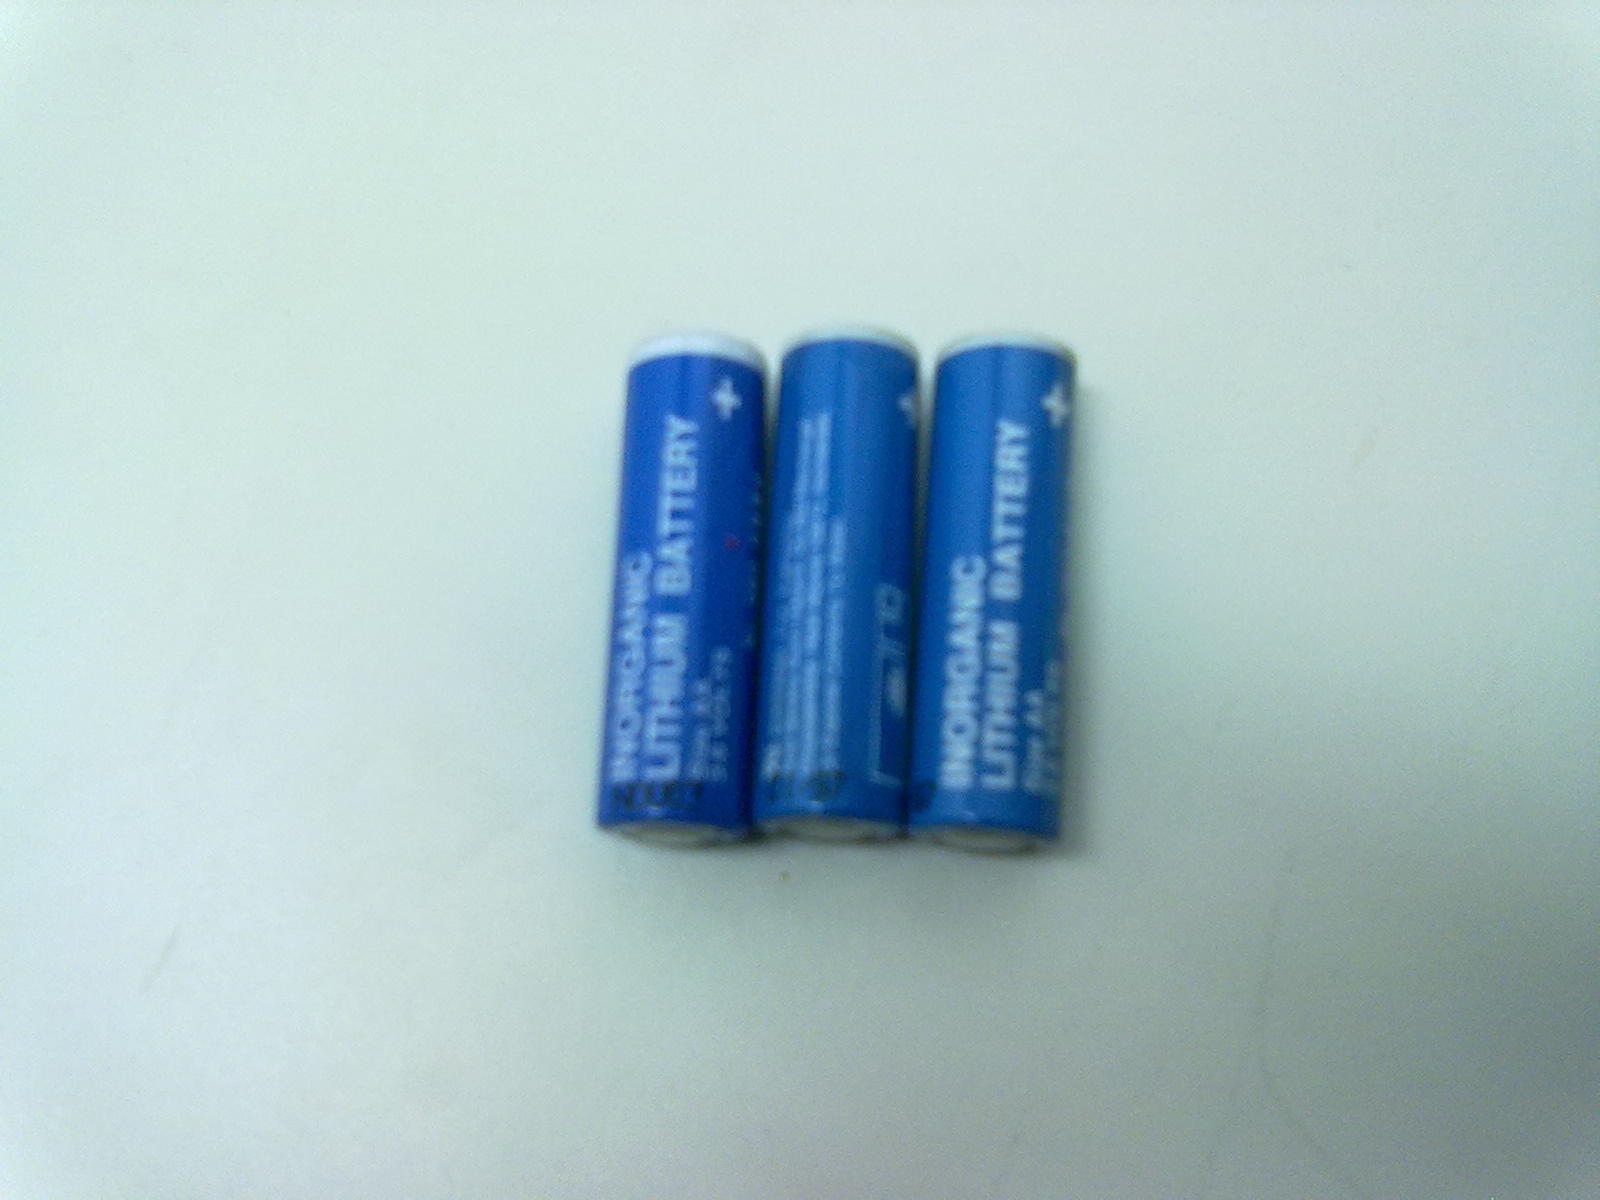 Simatic S5 backup batterij